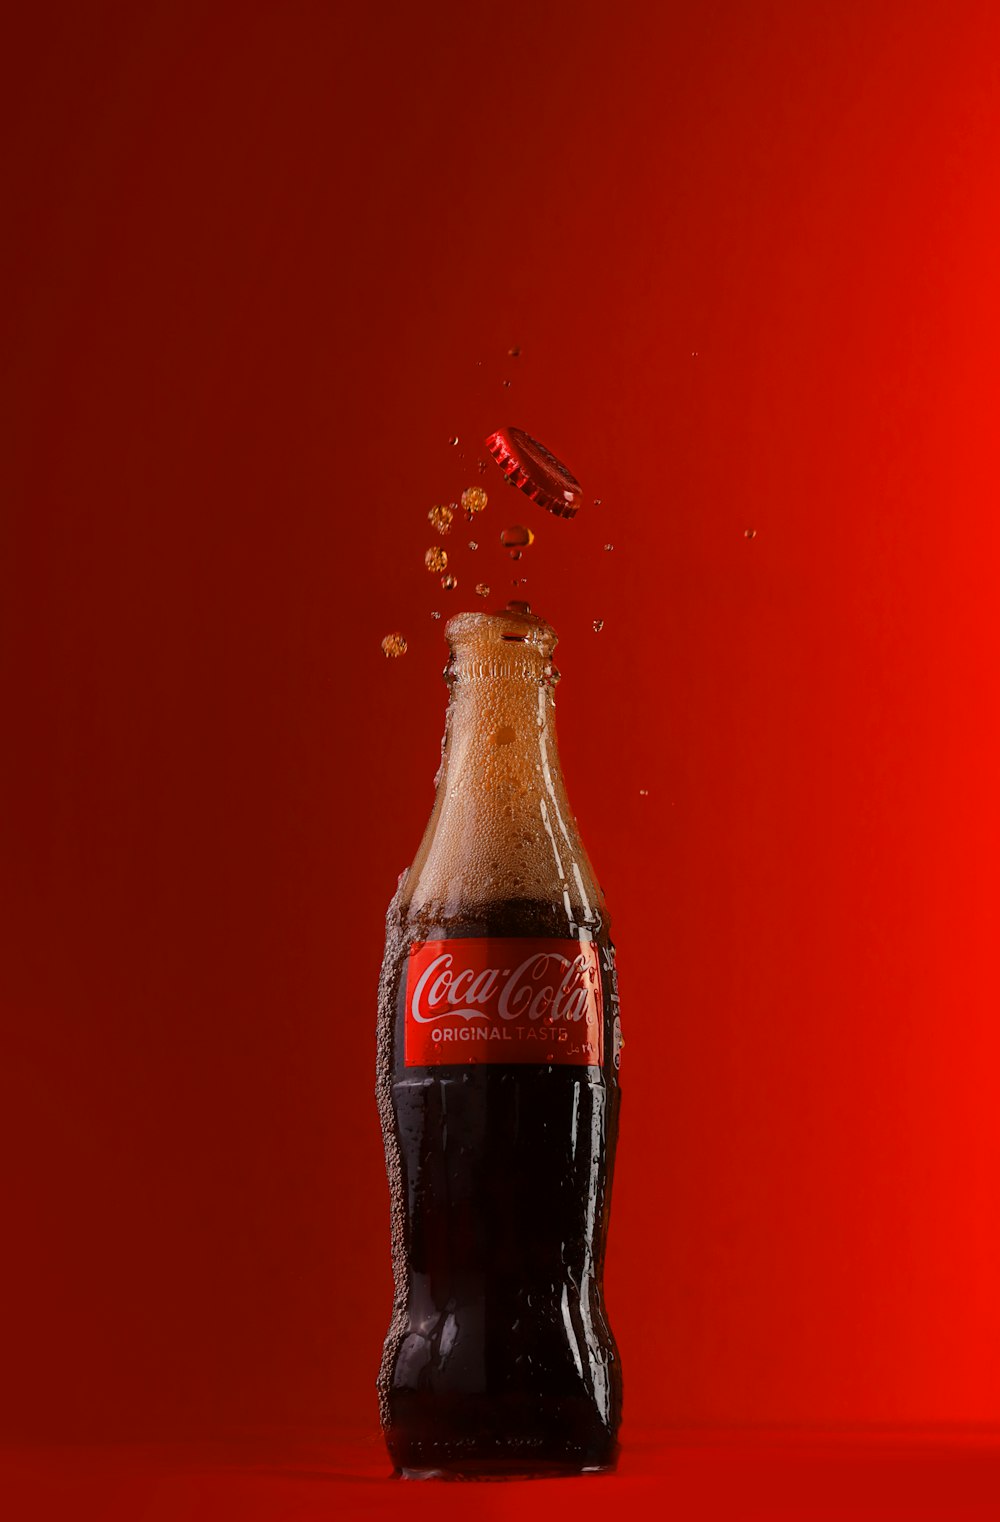 2 coca cola bottles on white surface photo – Free Bottle Image on Unsplash